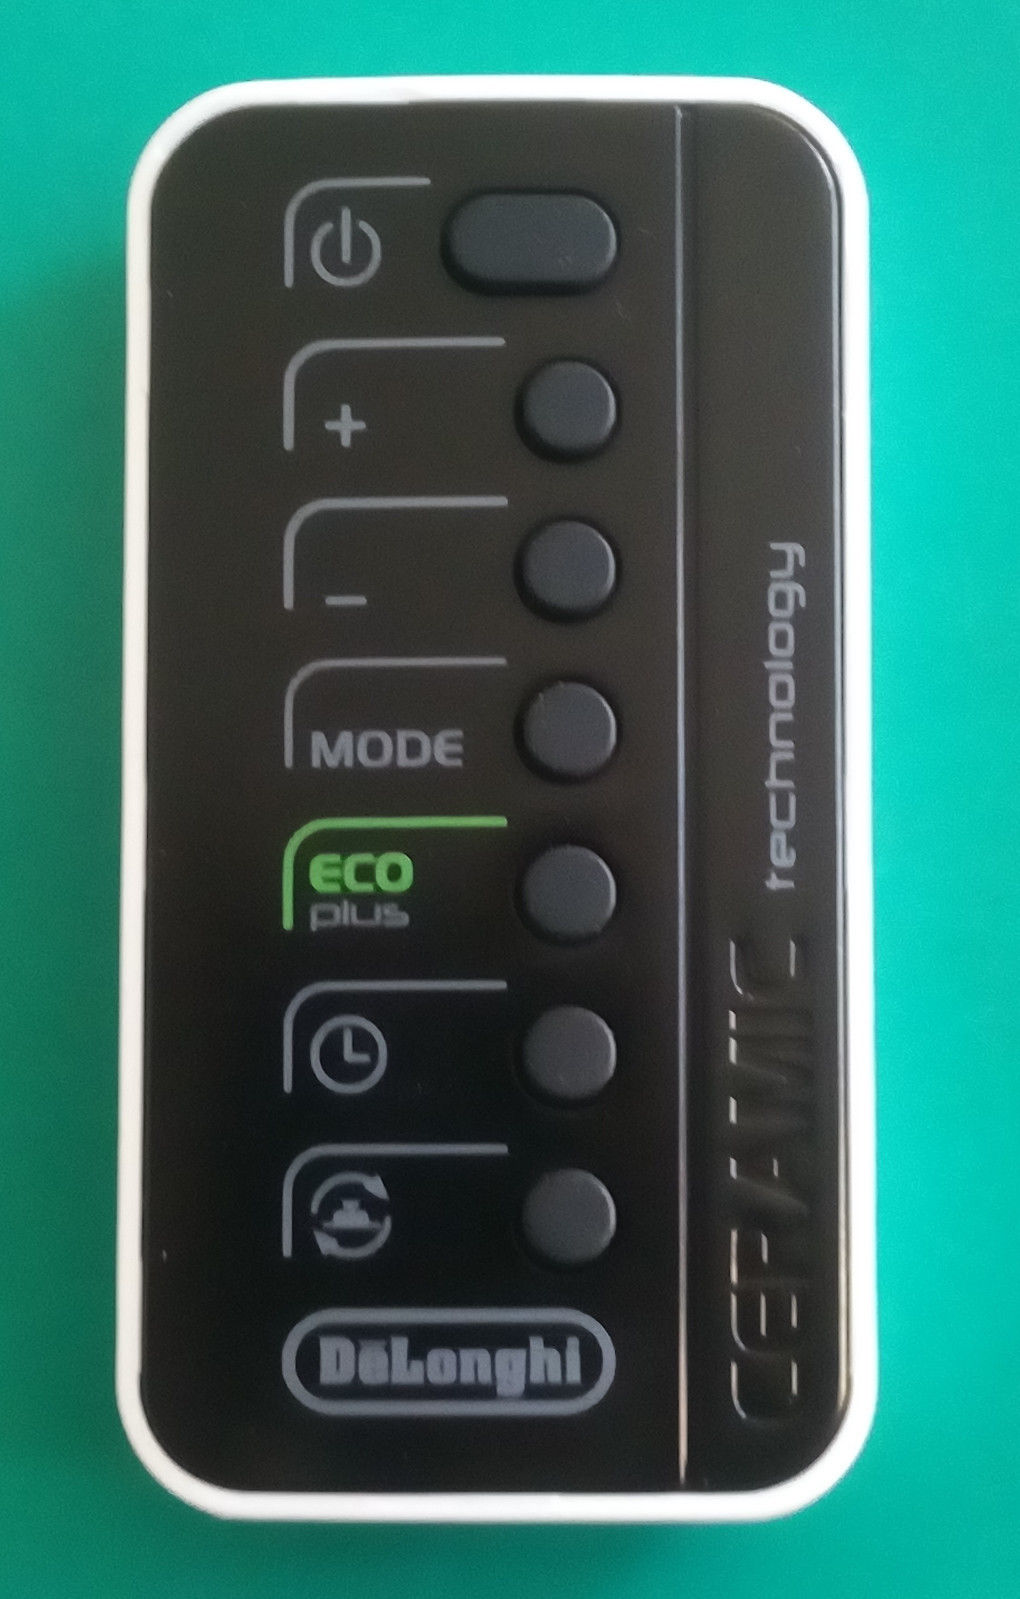 Delonghi telecomando originale per termoventilatore DCH7093ER - Bandi Srl